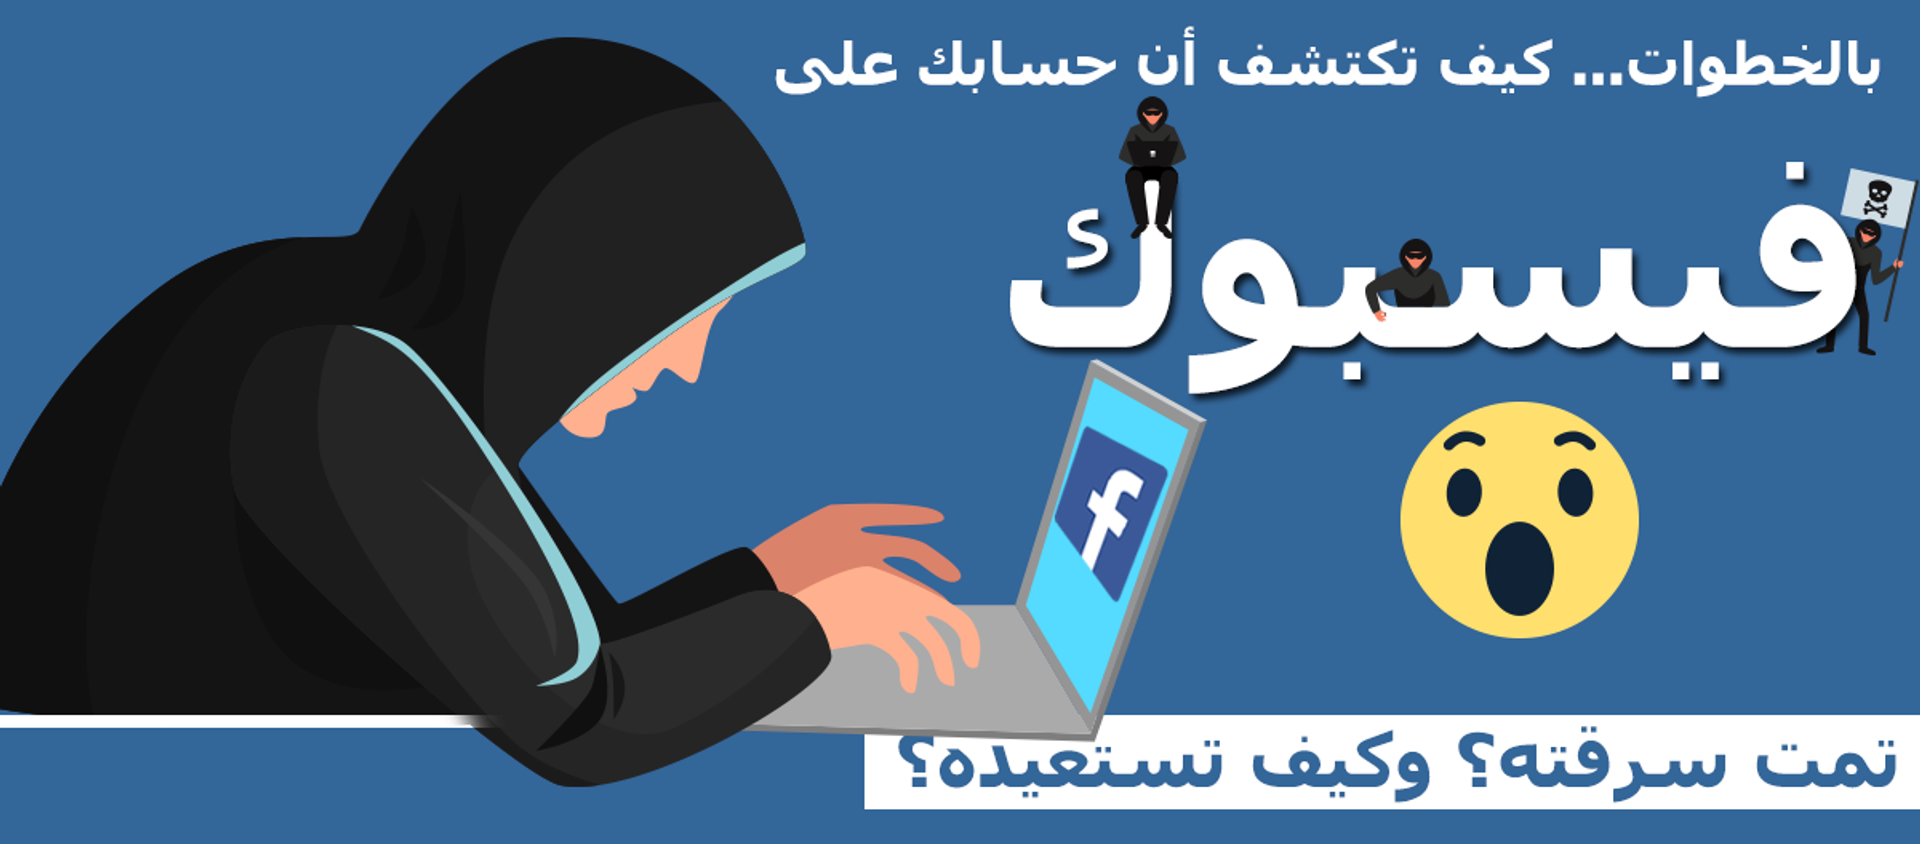 كيف تحمي حسابك على فيسبوك من السرقة؟ وكيف تستعيده؟ - سبوتنيك عربي, 1920, 17.06.2021